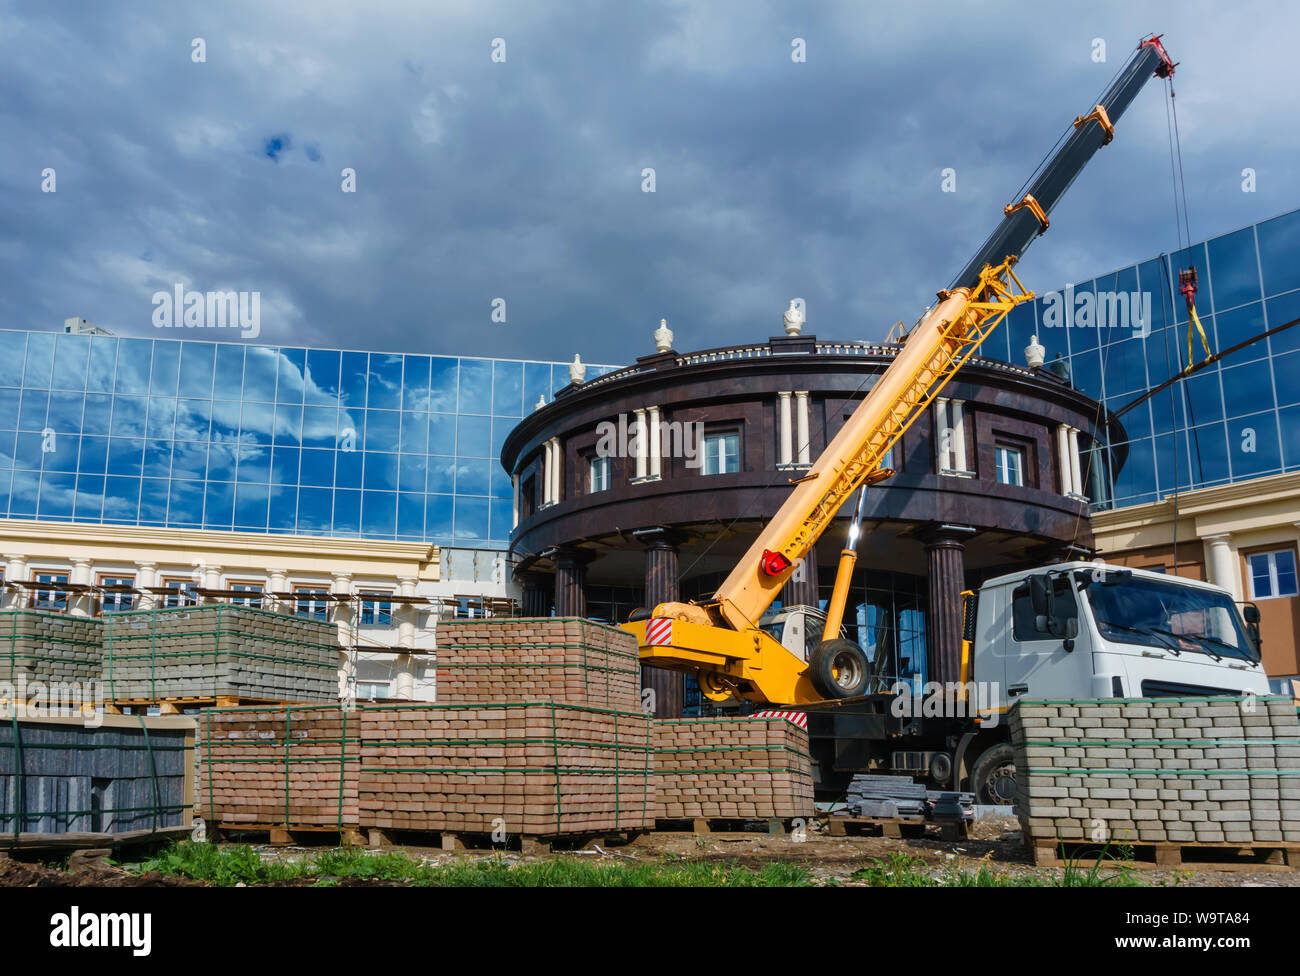 Camion-gru montata su un edificio sito in costruzione Foto Stock